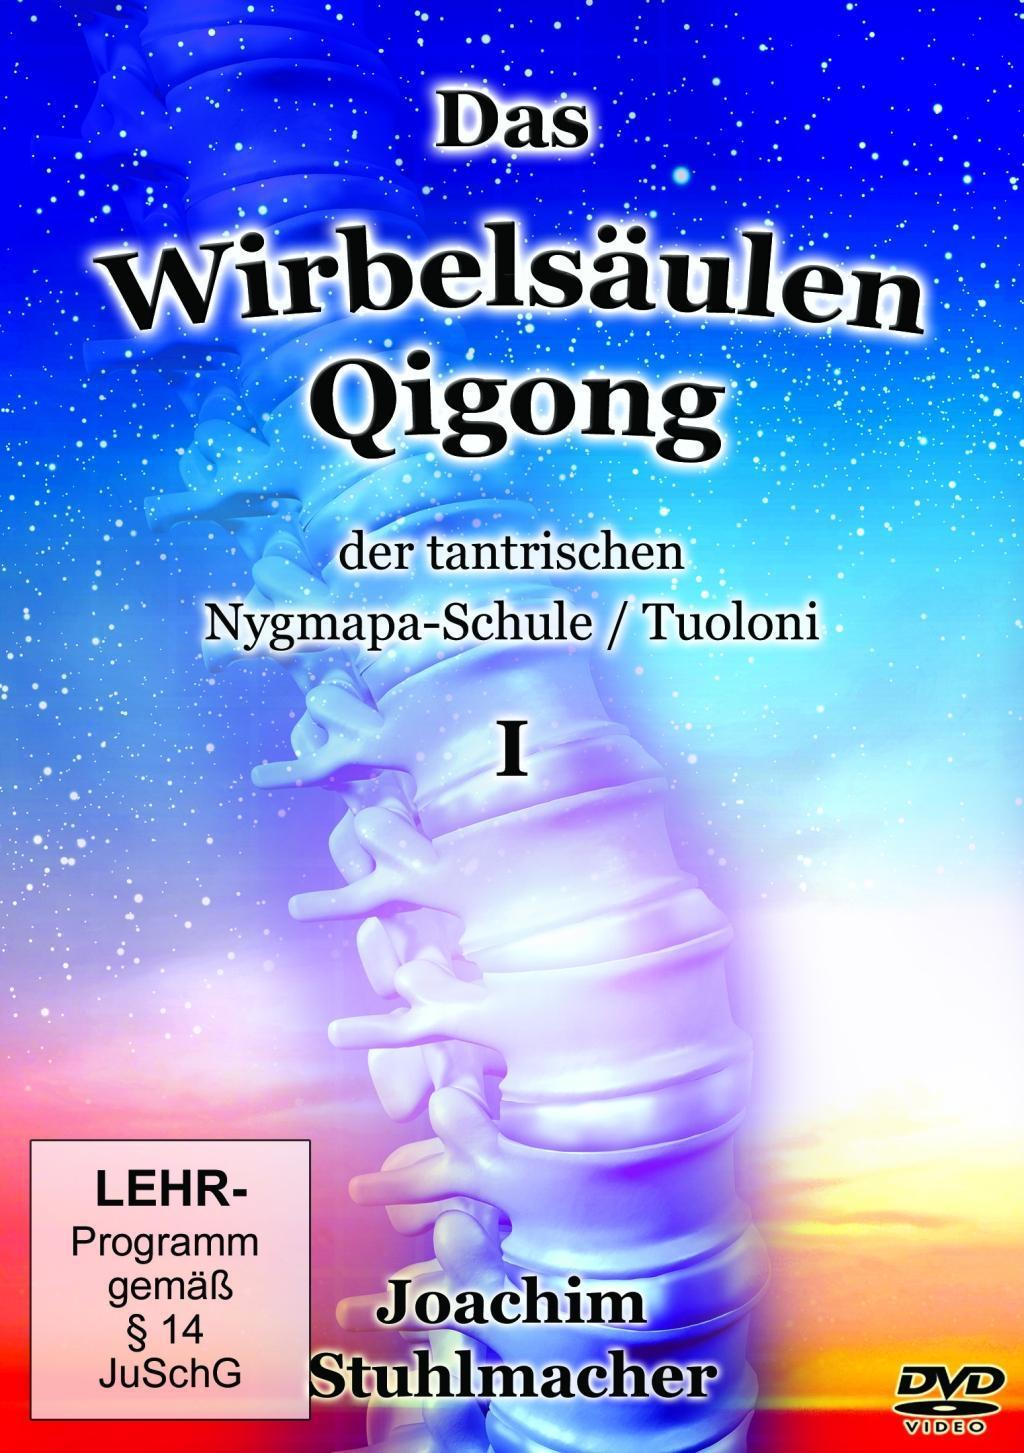 Image of Das Wirbelsäulen-Qigong der tantrischen Nygmapa-Schule, DVD